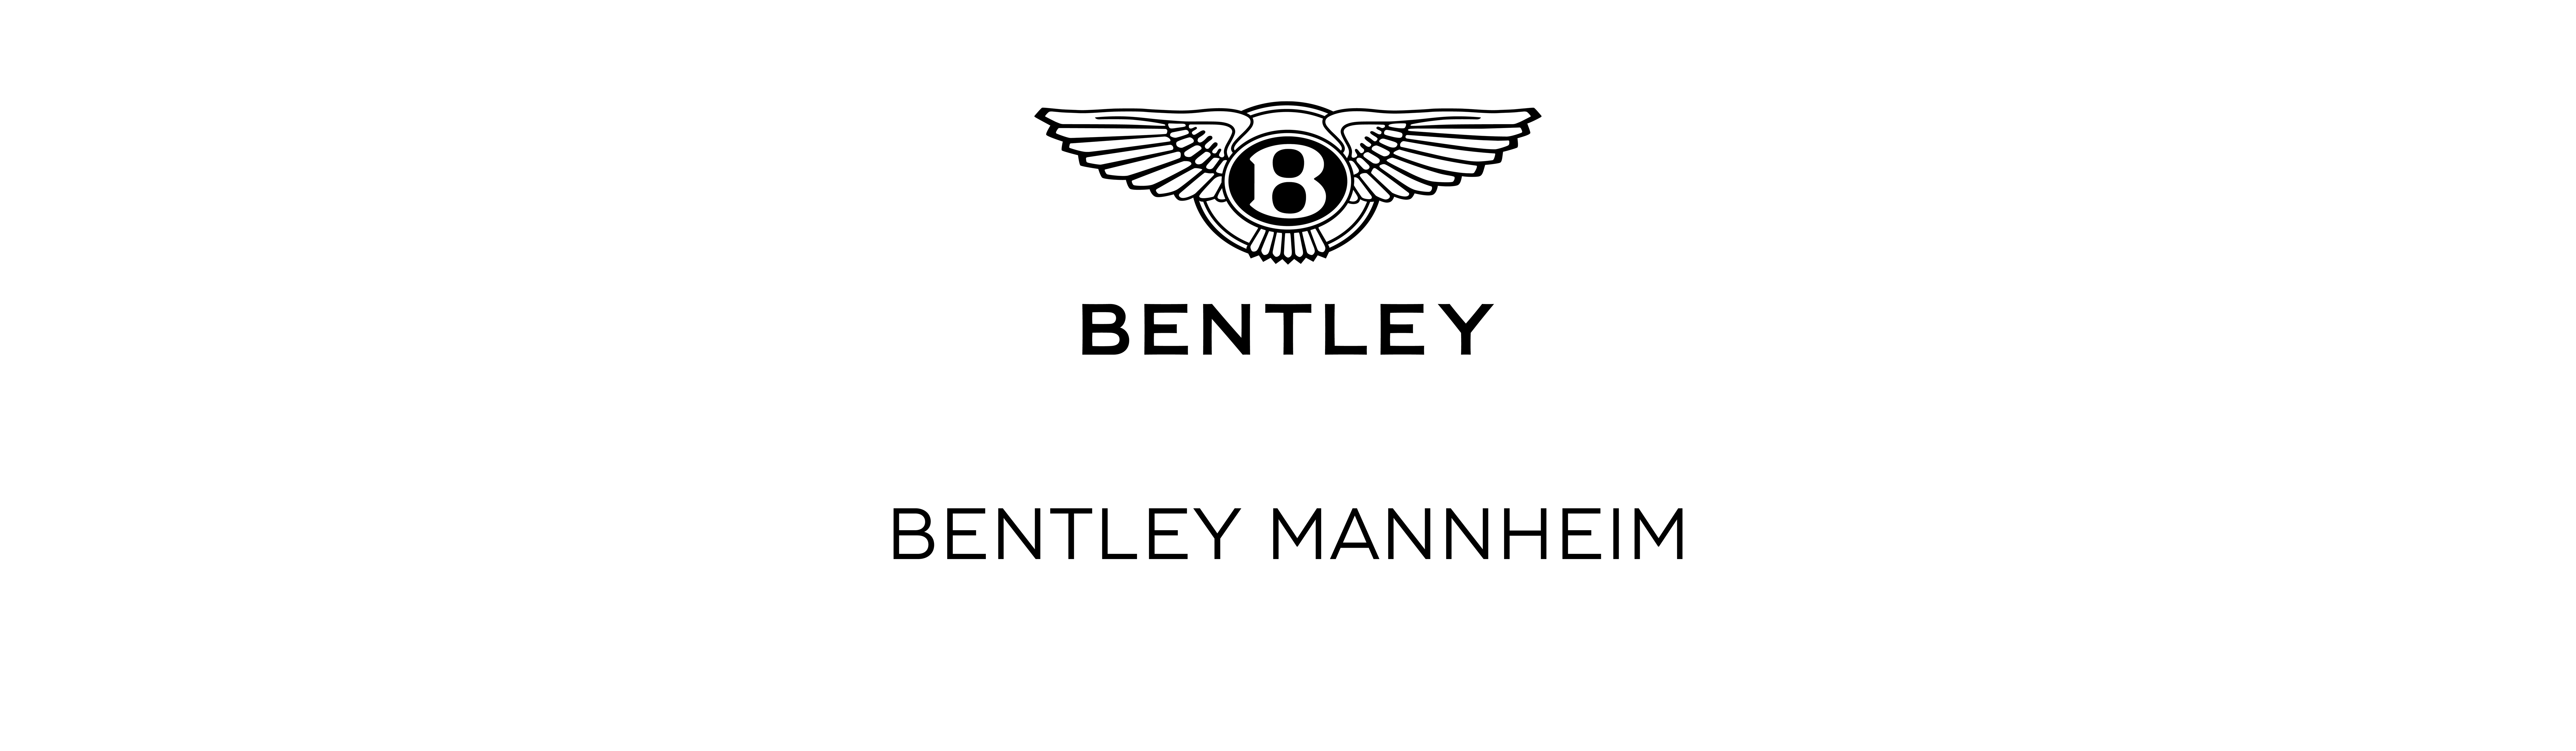 Bach Premium Cars GmbH, Bentley Mannheim